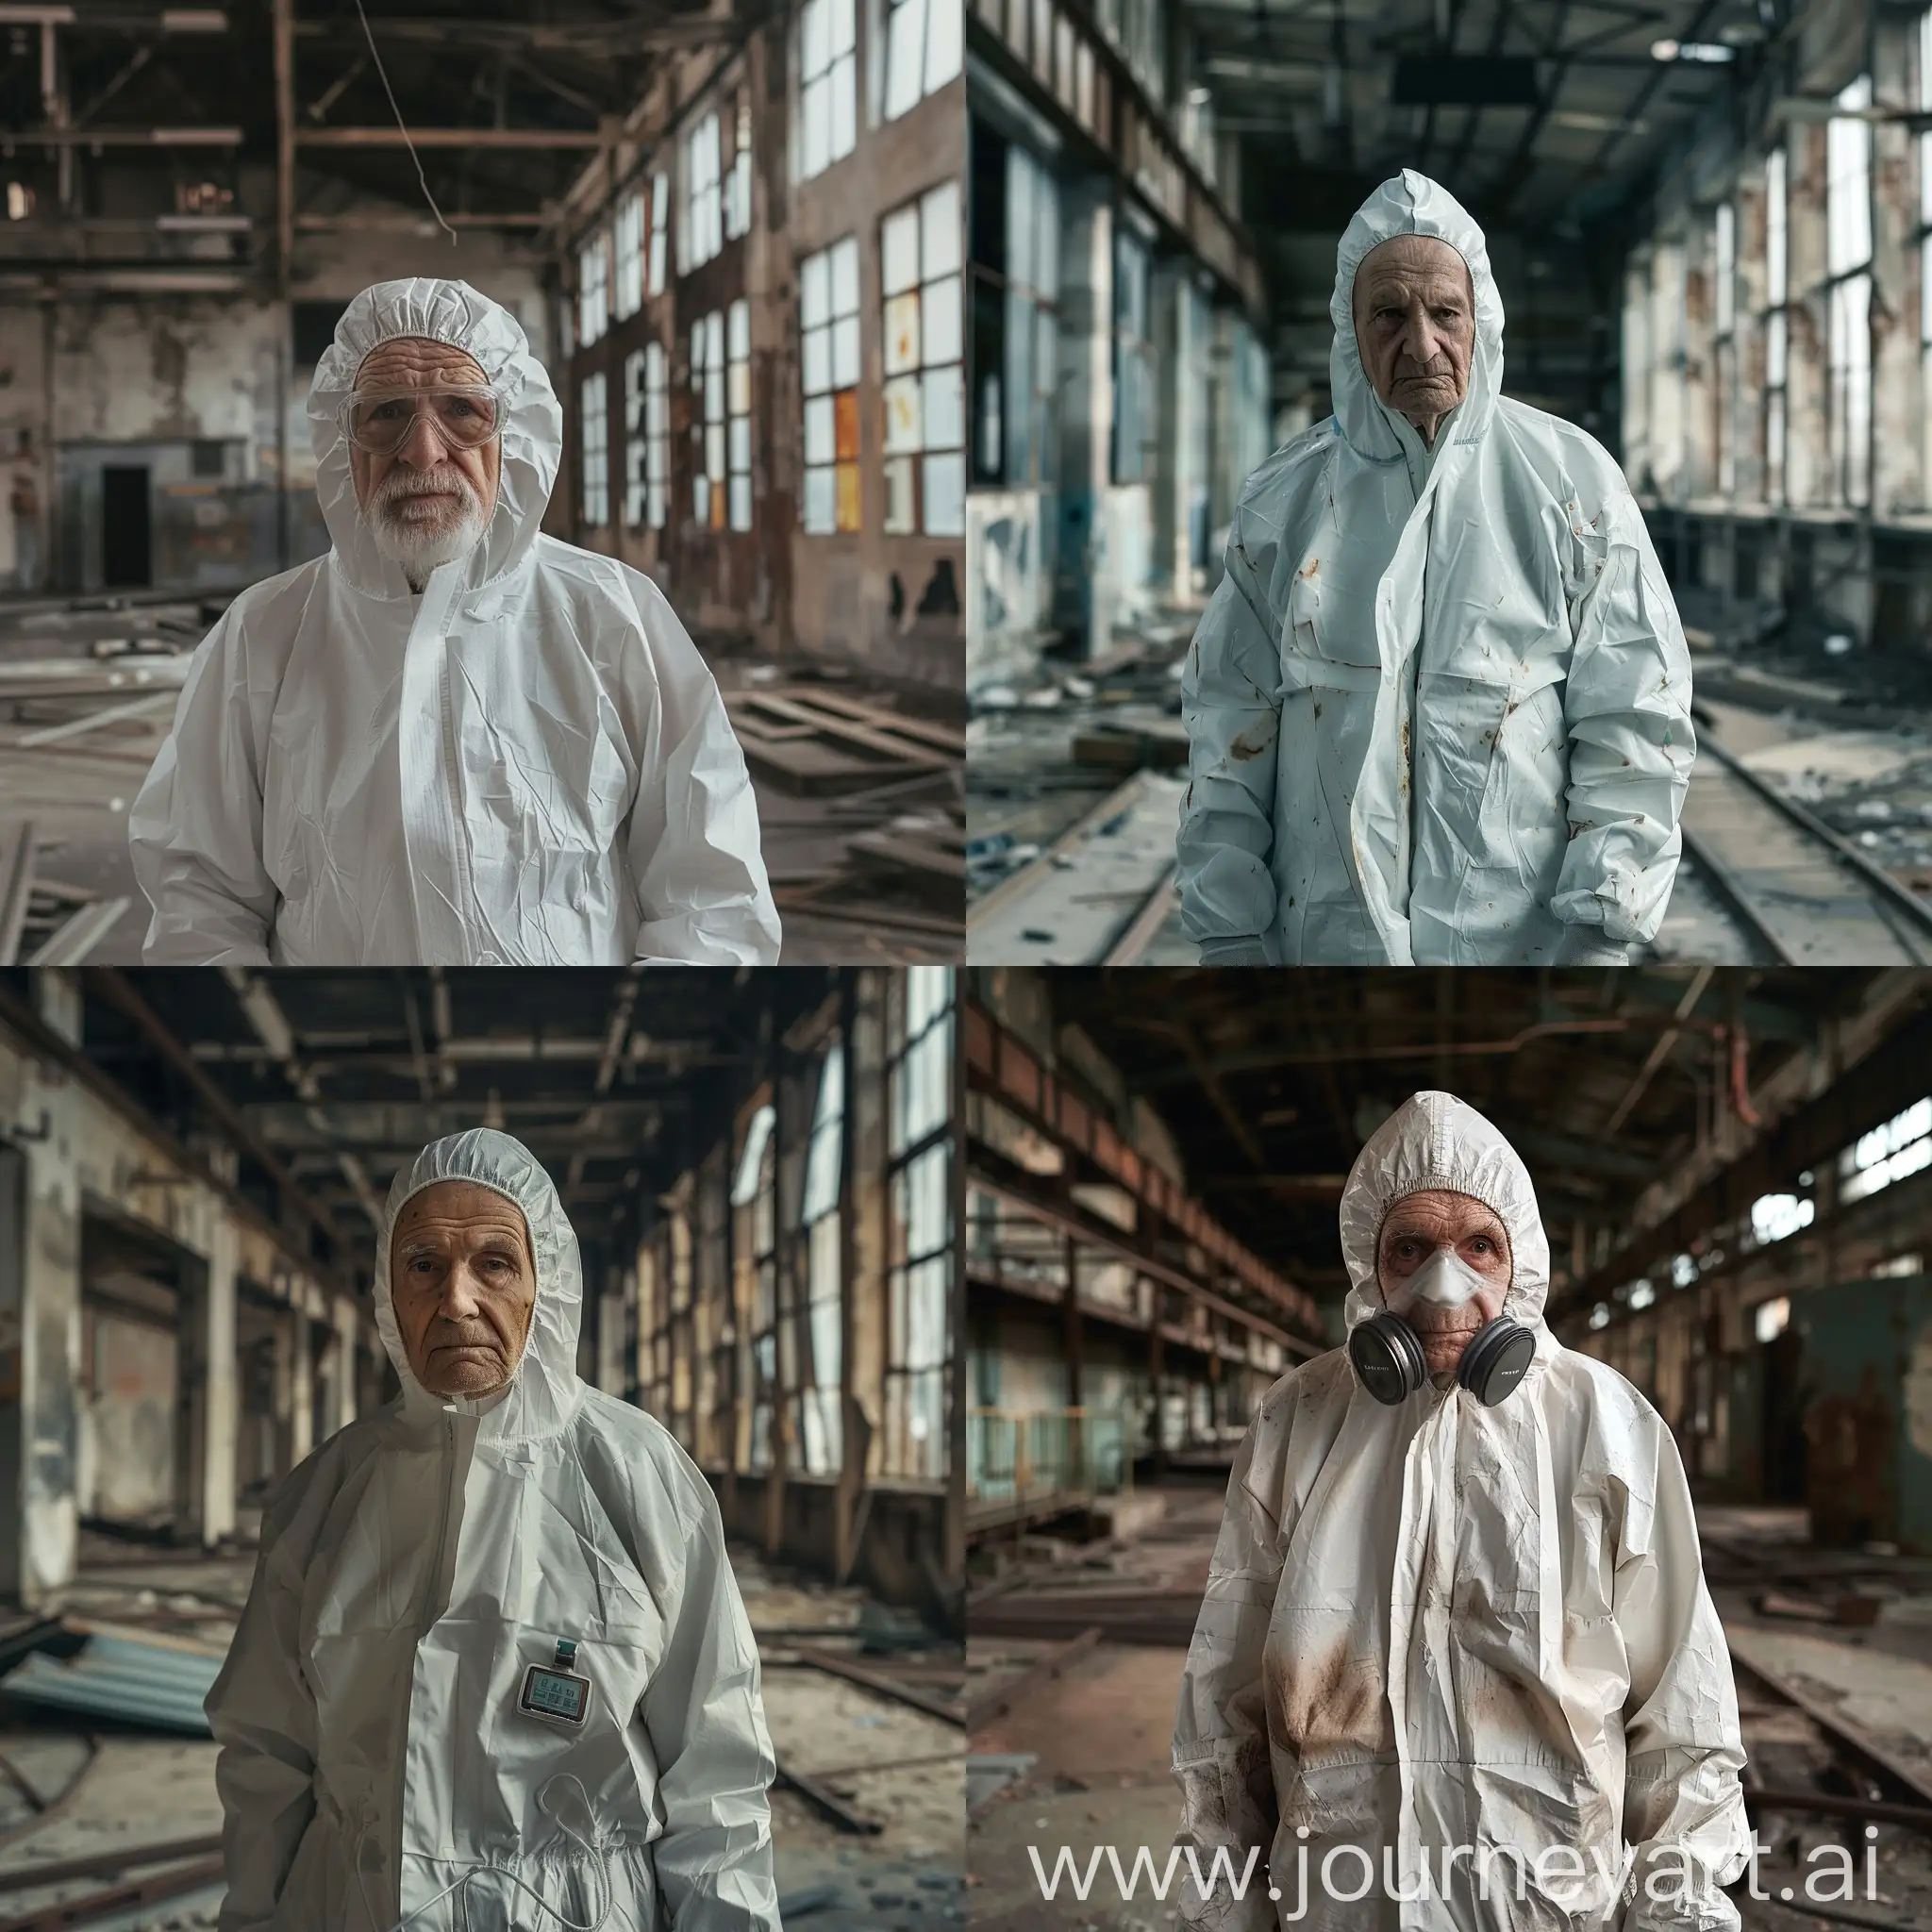 Elderly-Hazmat-Suit-Explorer-in-Abandoned-Factory